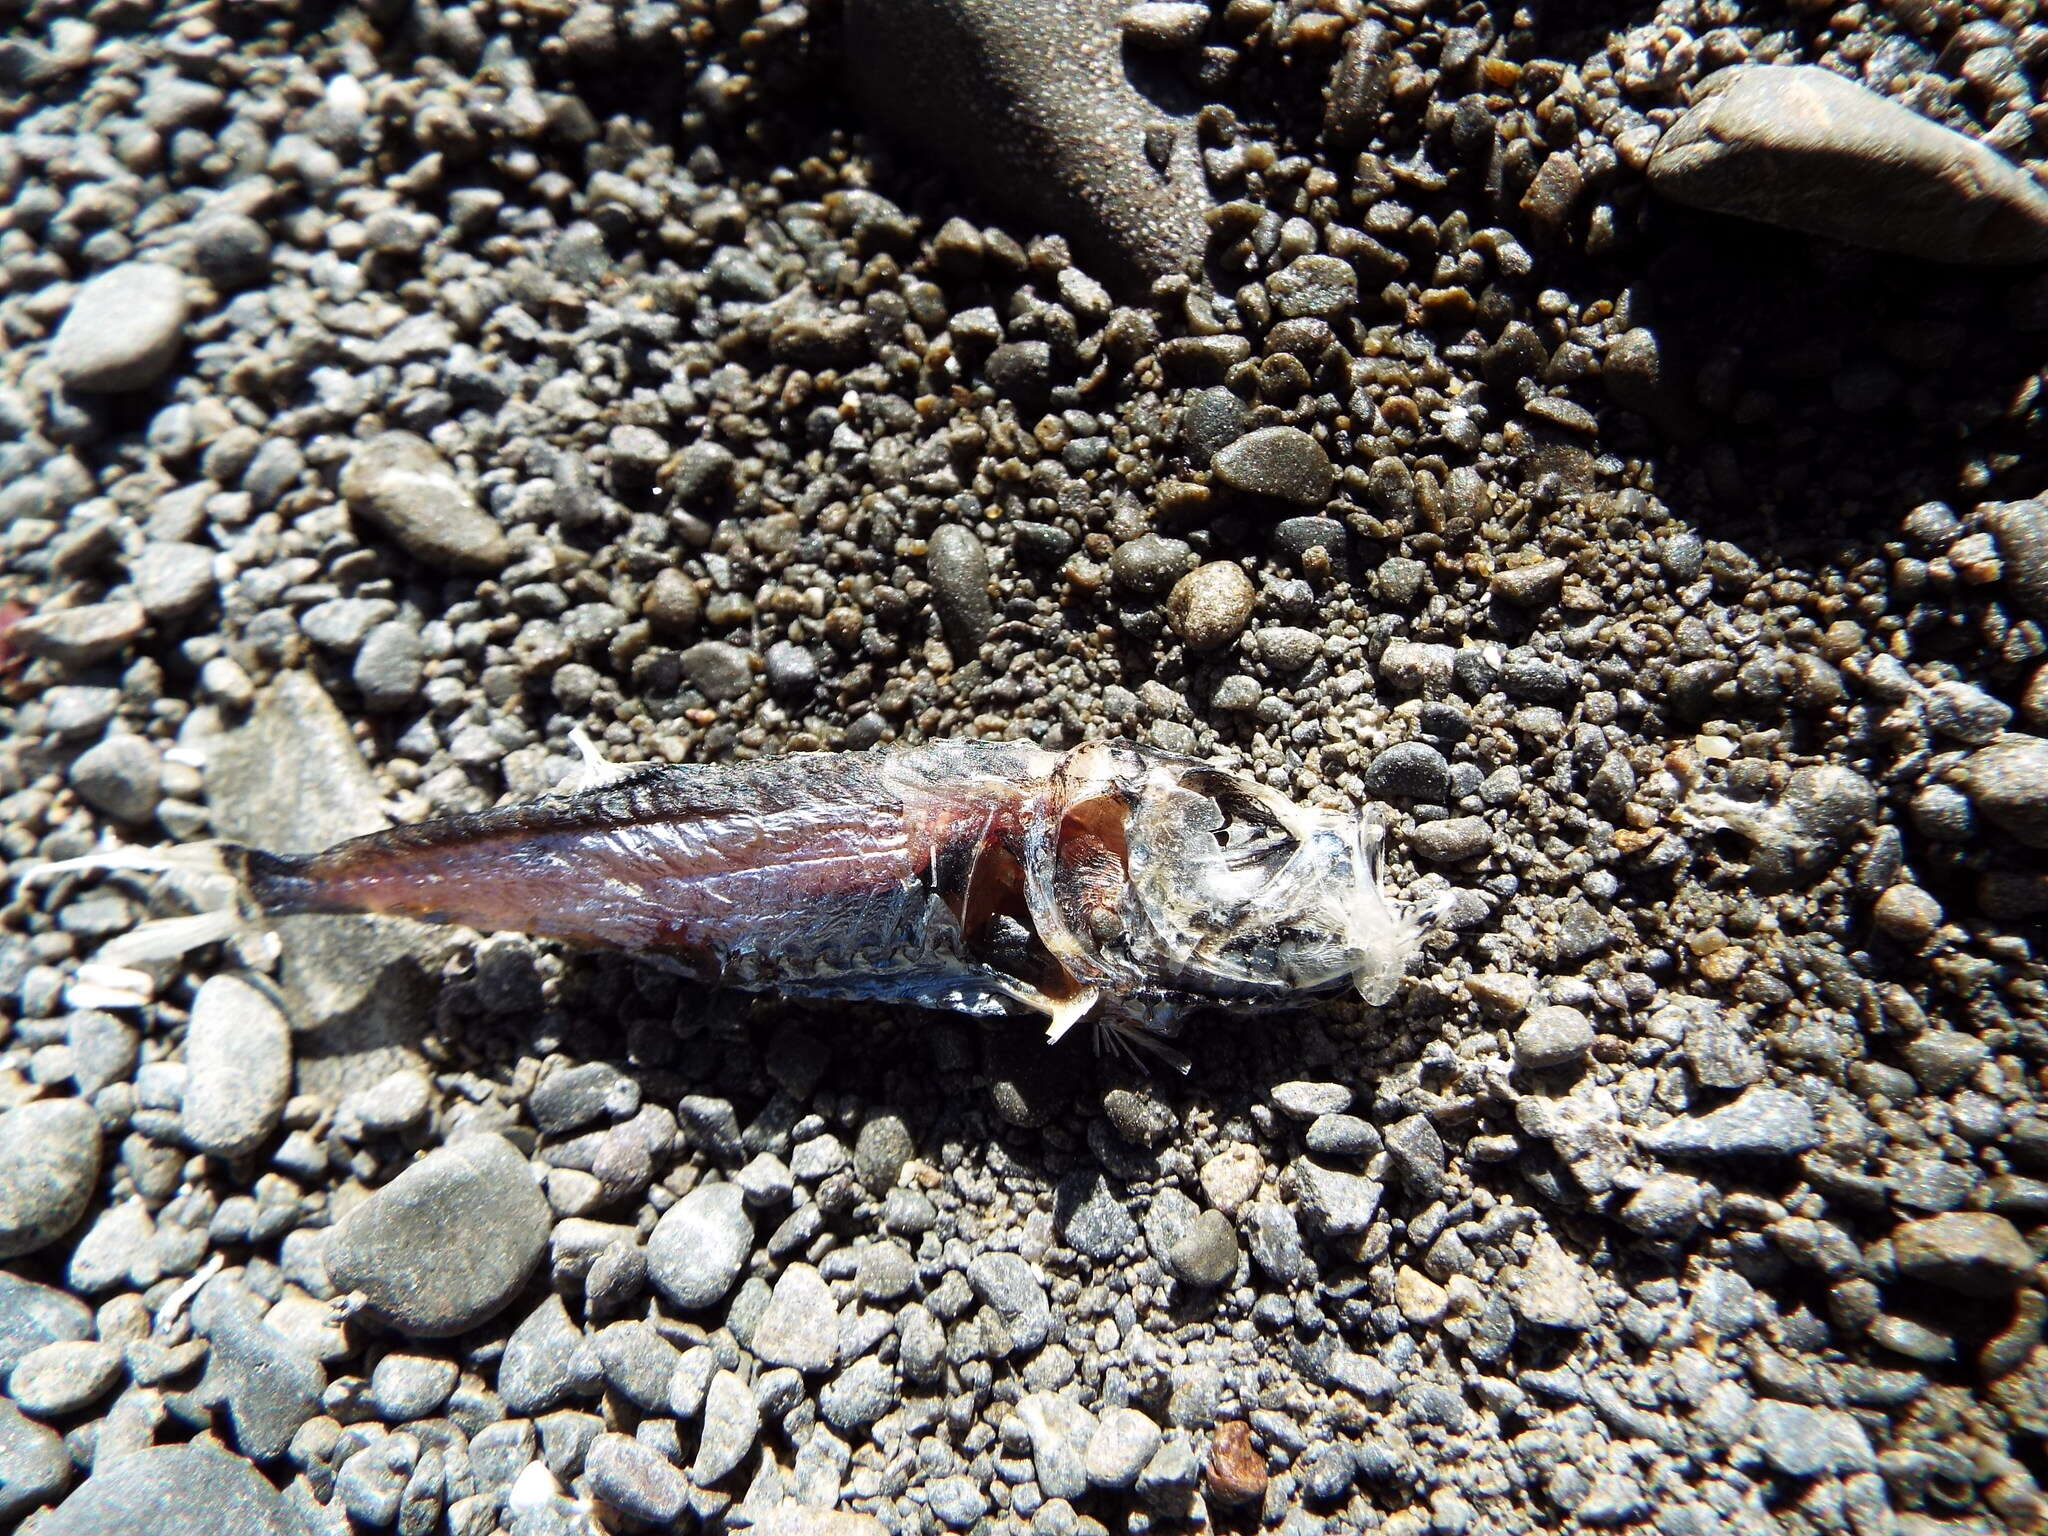 Image of Pennant lantern-fish